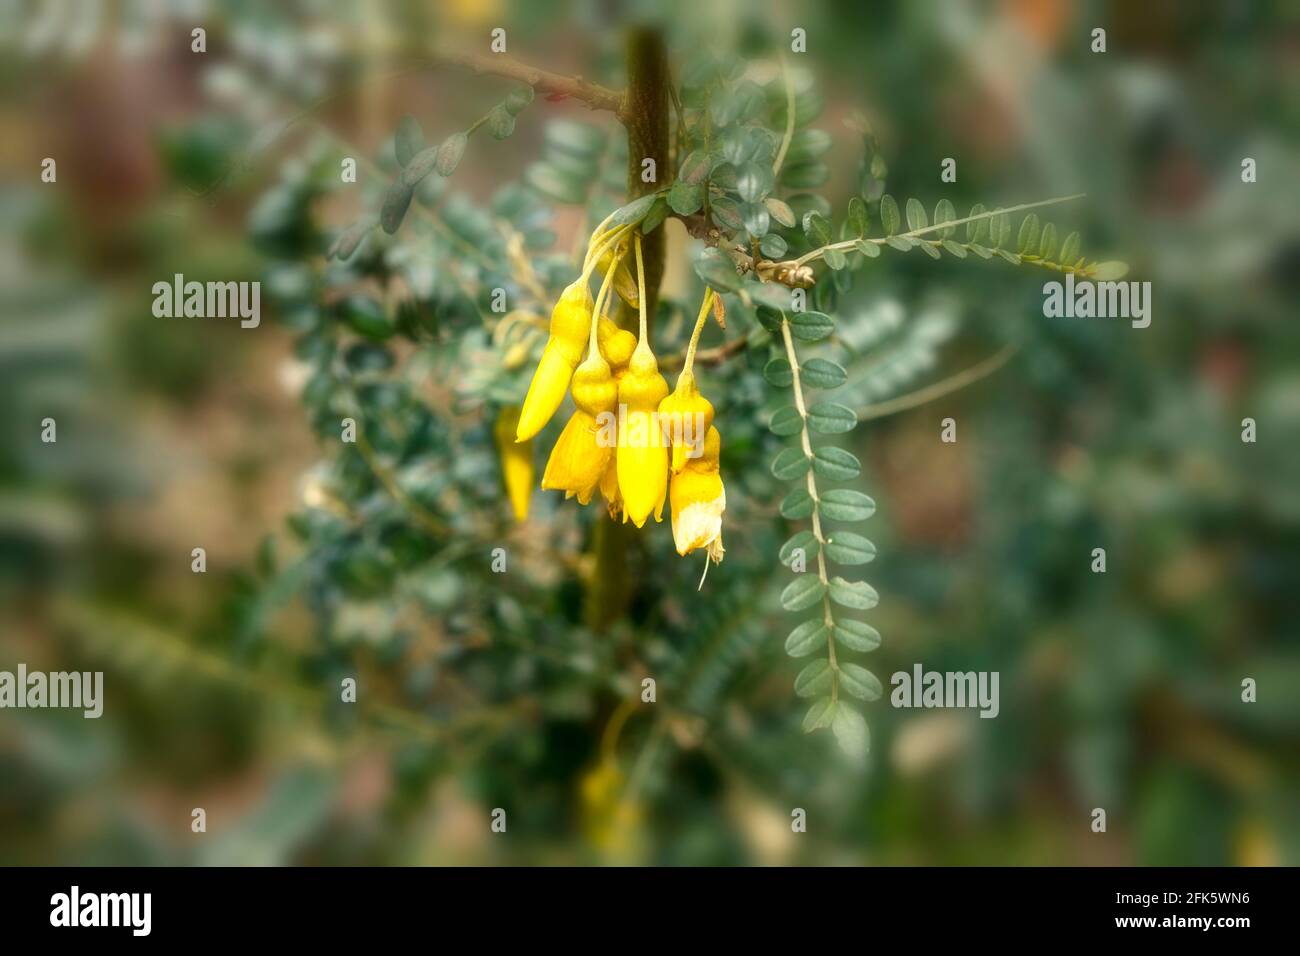 Sophora Sun King = 'Hilsop', kowhai [Sun King], Sophora 'Hilsop', Sophora 'Sun King', flowers and foliage Stock Photo